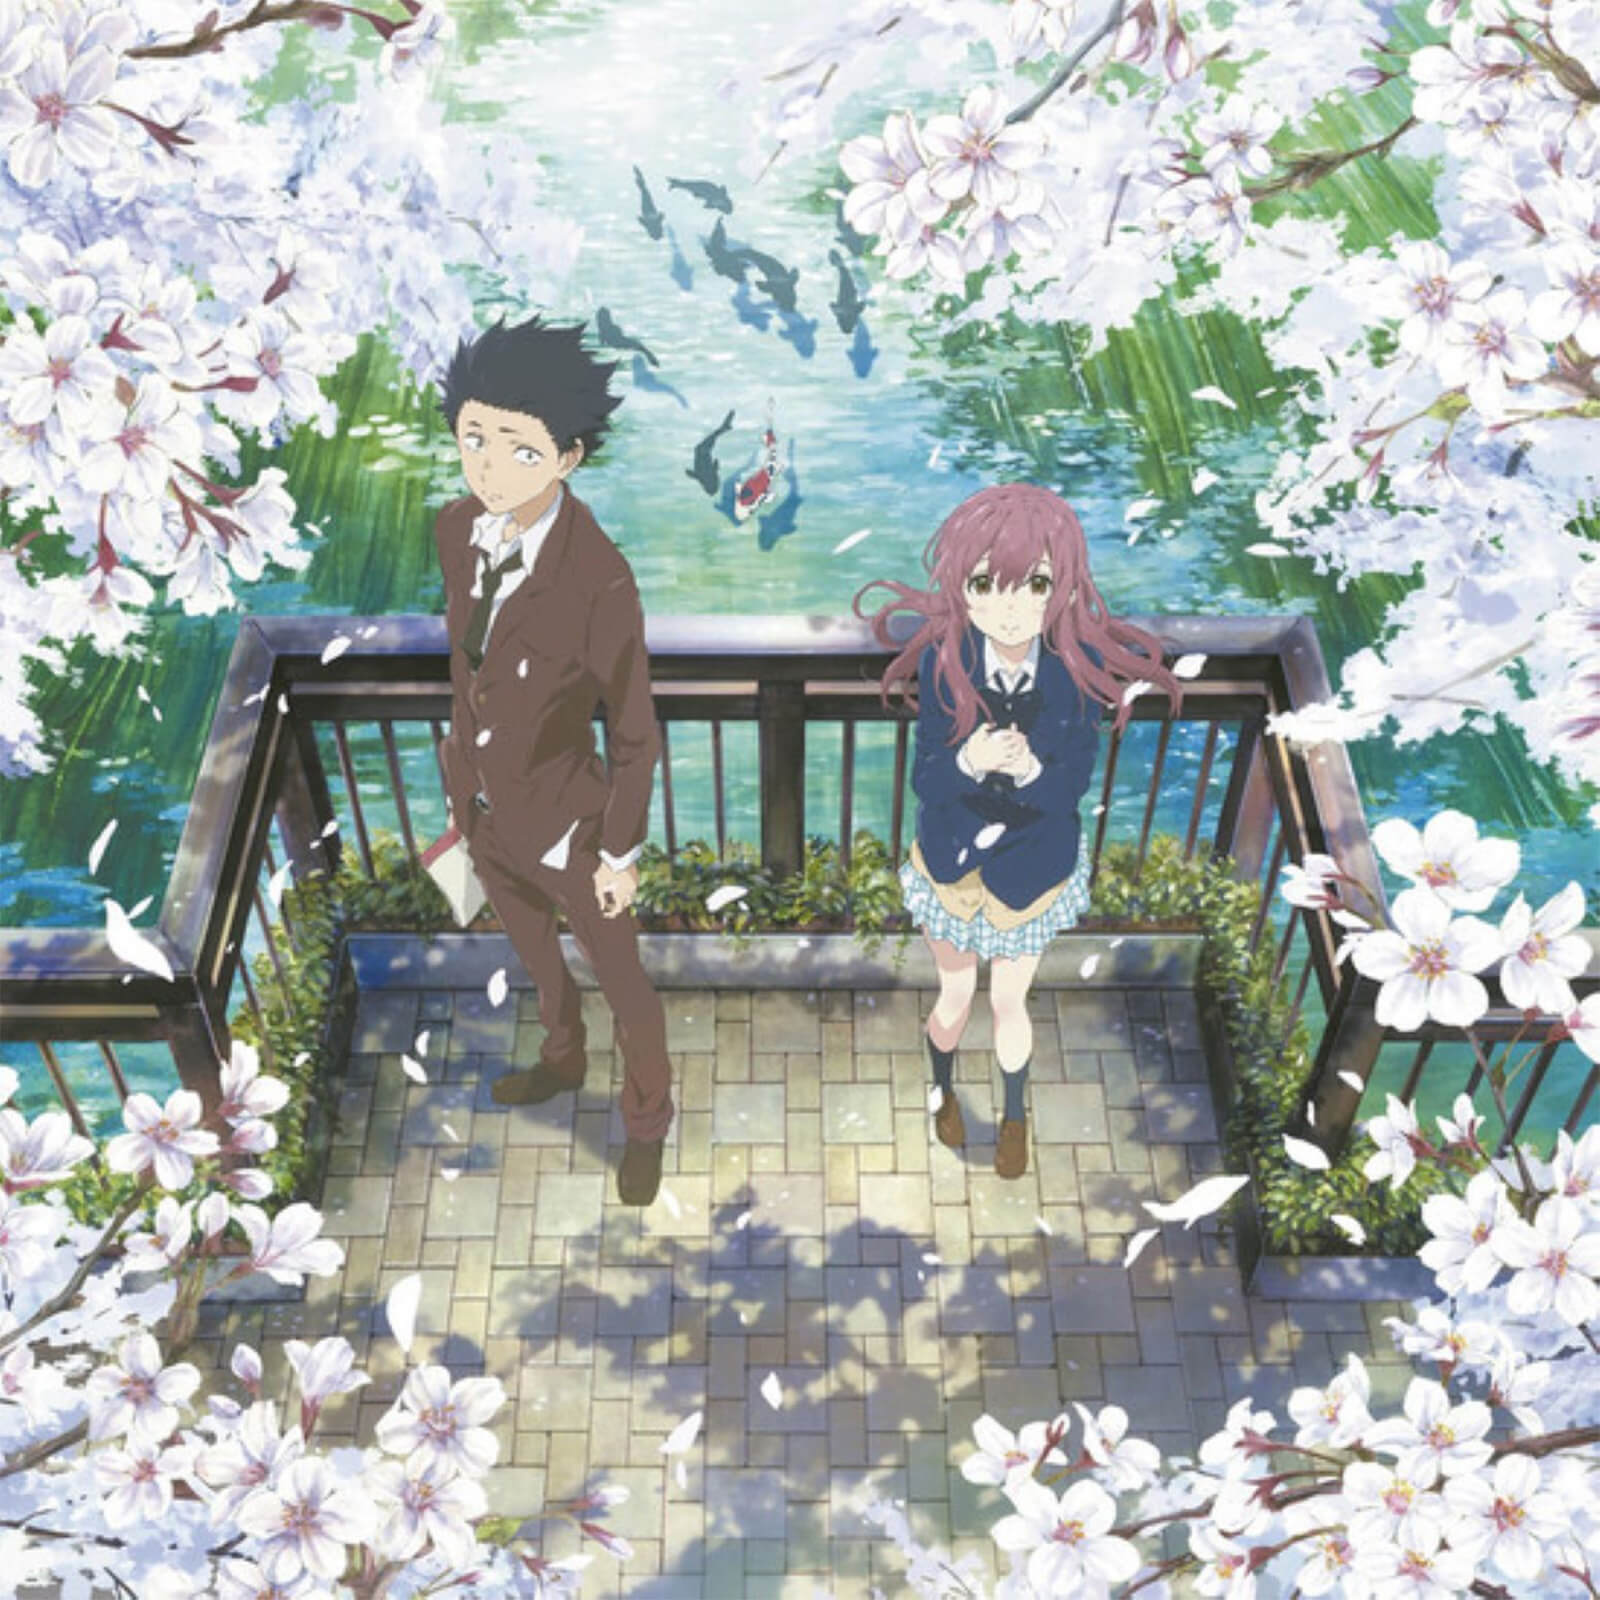 Anime Limited - A Silent Voice (Original Soundtrack) 180g 2xLP